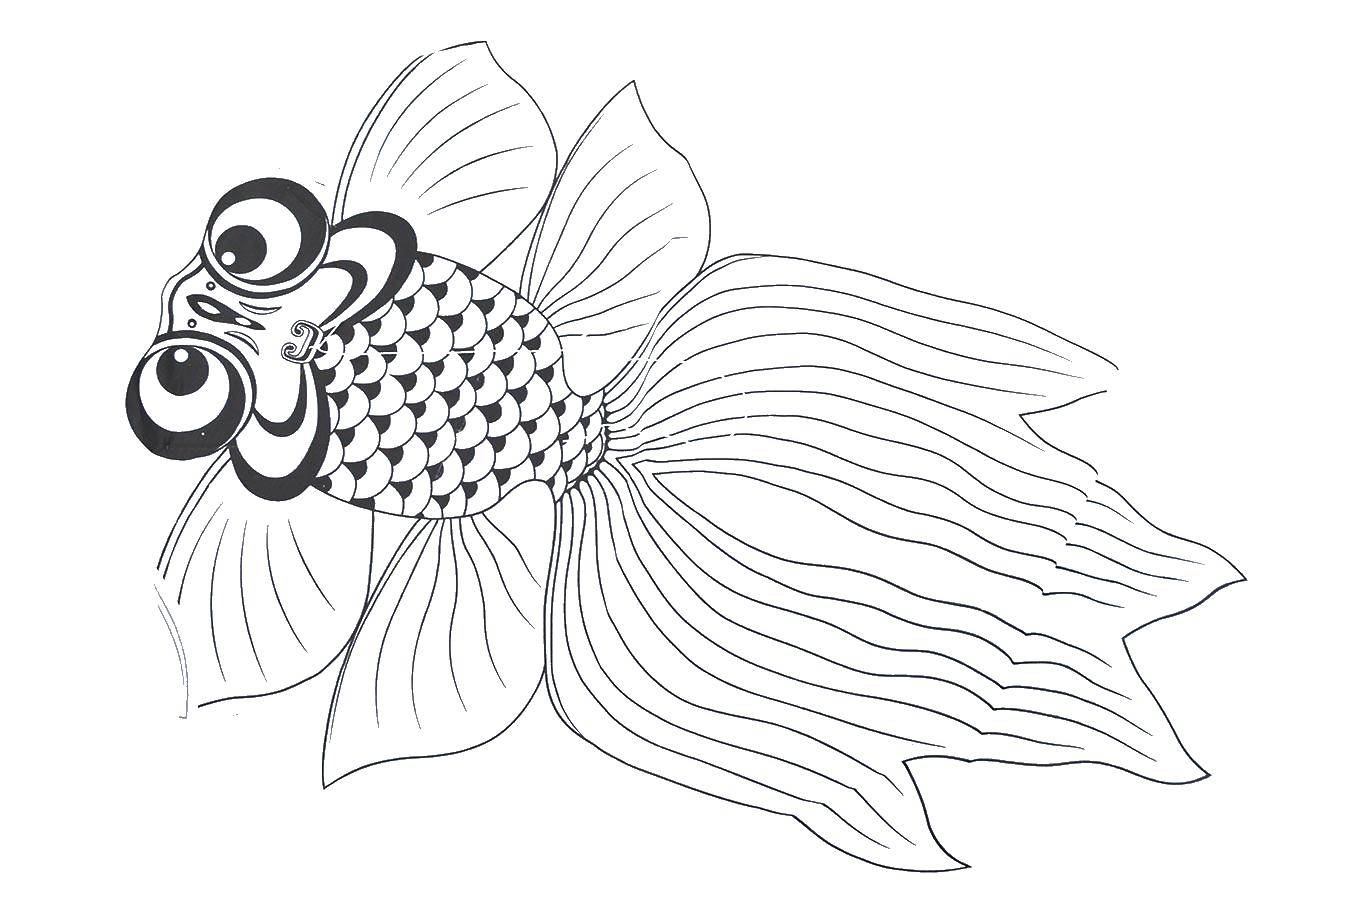 Розмальовки  Золота рибка з великими очима. Завантажити розмальовку золота рибка, телескопів.  Роздрукувати ,повітряний змій,